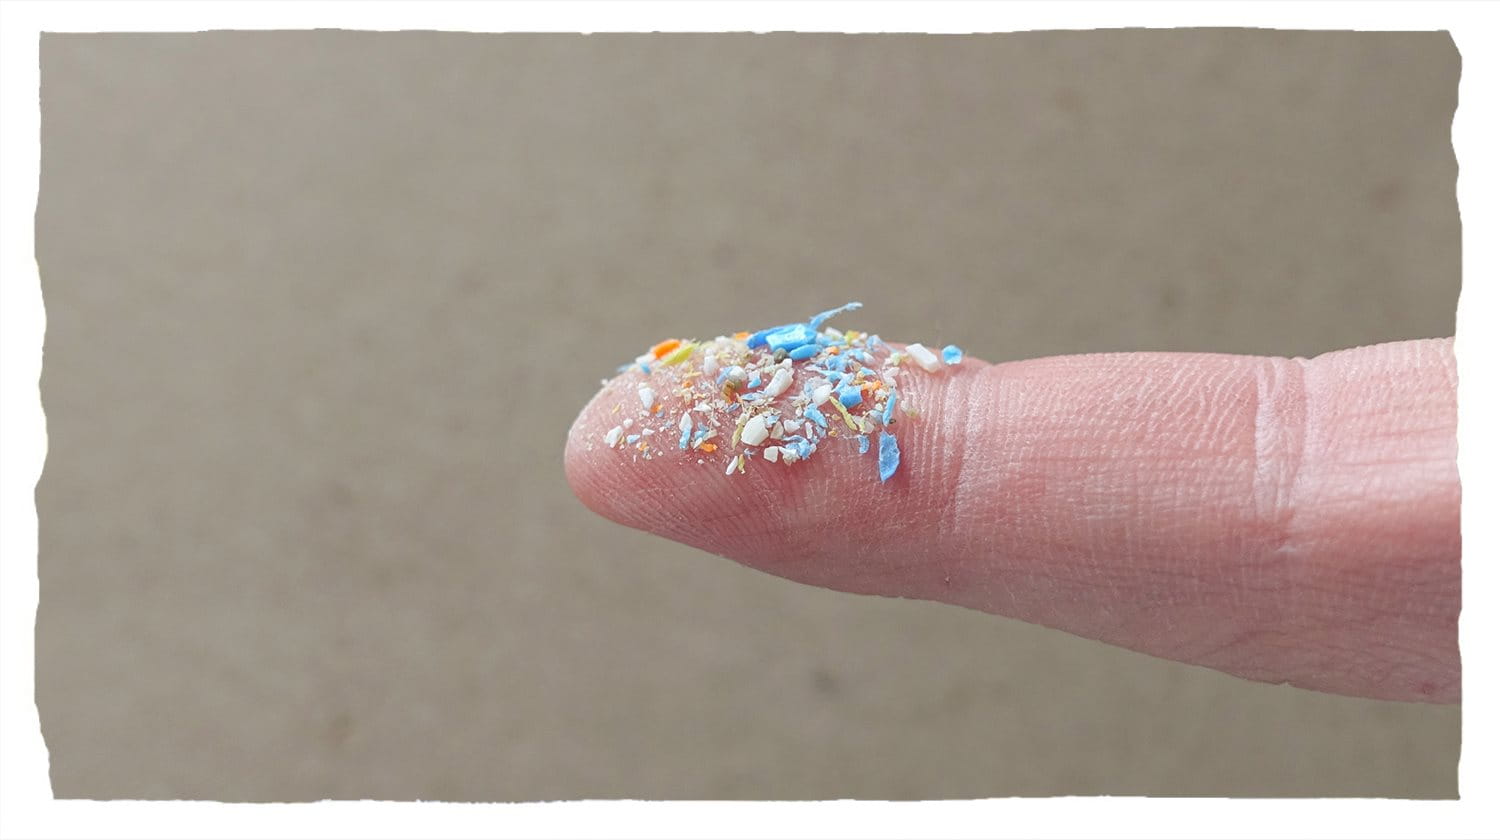 Frammenti di plastica visibili sulla punta di un dito